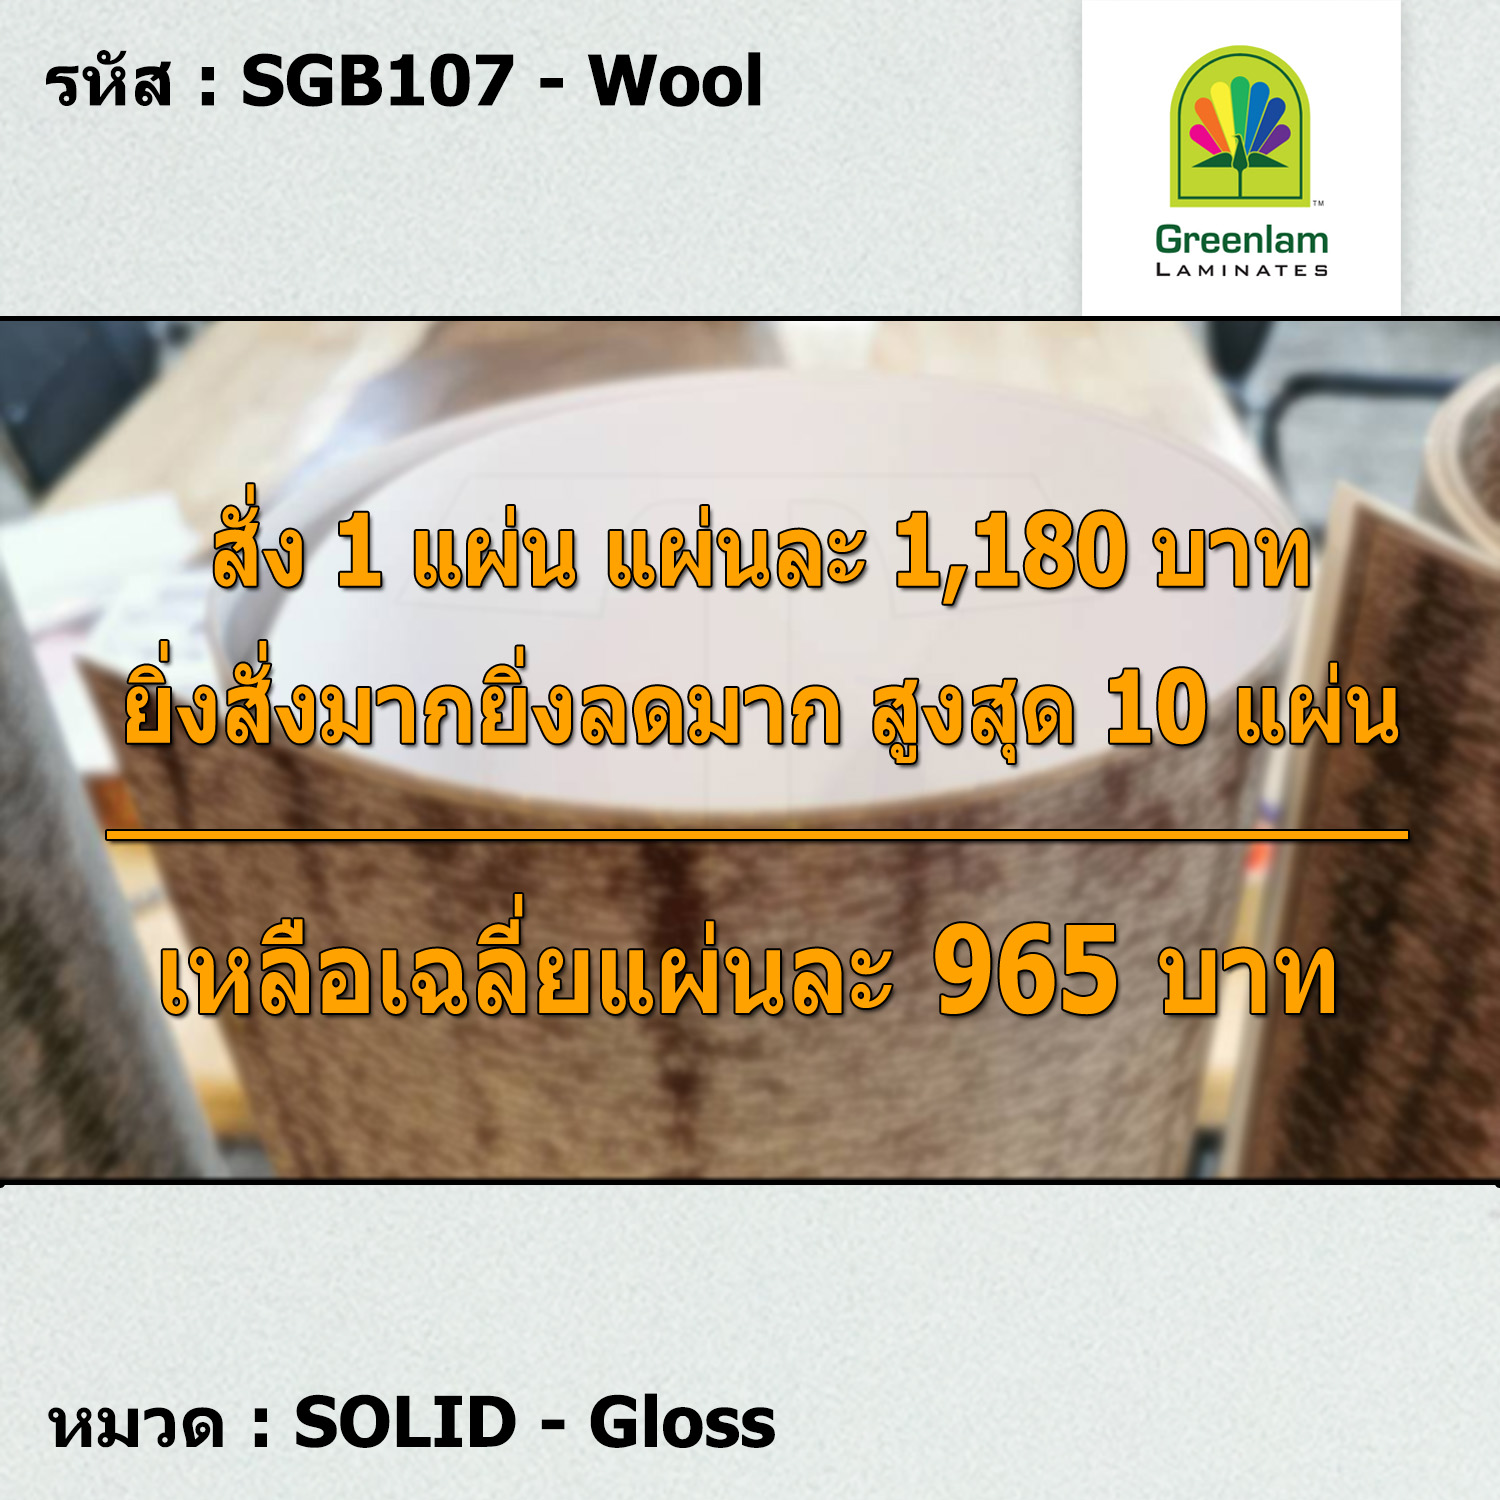 แผ่นโฟเมก้า แผ่นลามิเนต ยี่ห้อ Greenlam สีขาว รหัส SGB107 Wool พื้นผิวลาย Gloss ขนาด 1220 x 2440 มม. หนา 0.80 มม. ใช้สำหรับงานตกแต่งภายใน งานปิดผิวเฟอร์นิเจอร์ ผนัง และอื่นๆ เพื่อเพิ่มความสวยงาม formica laminate SGB107